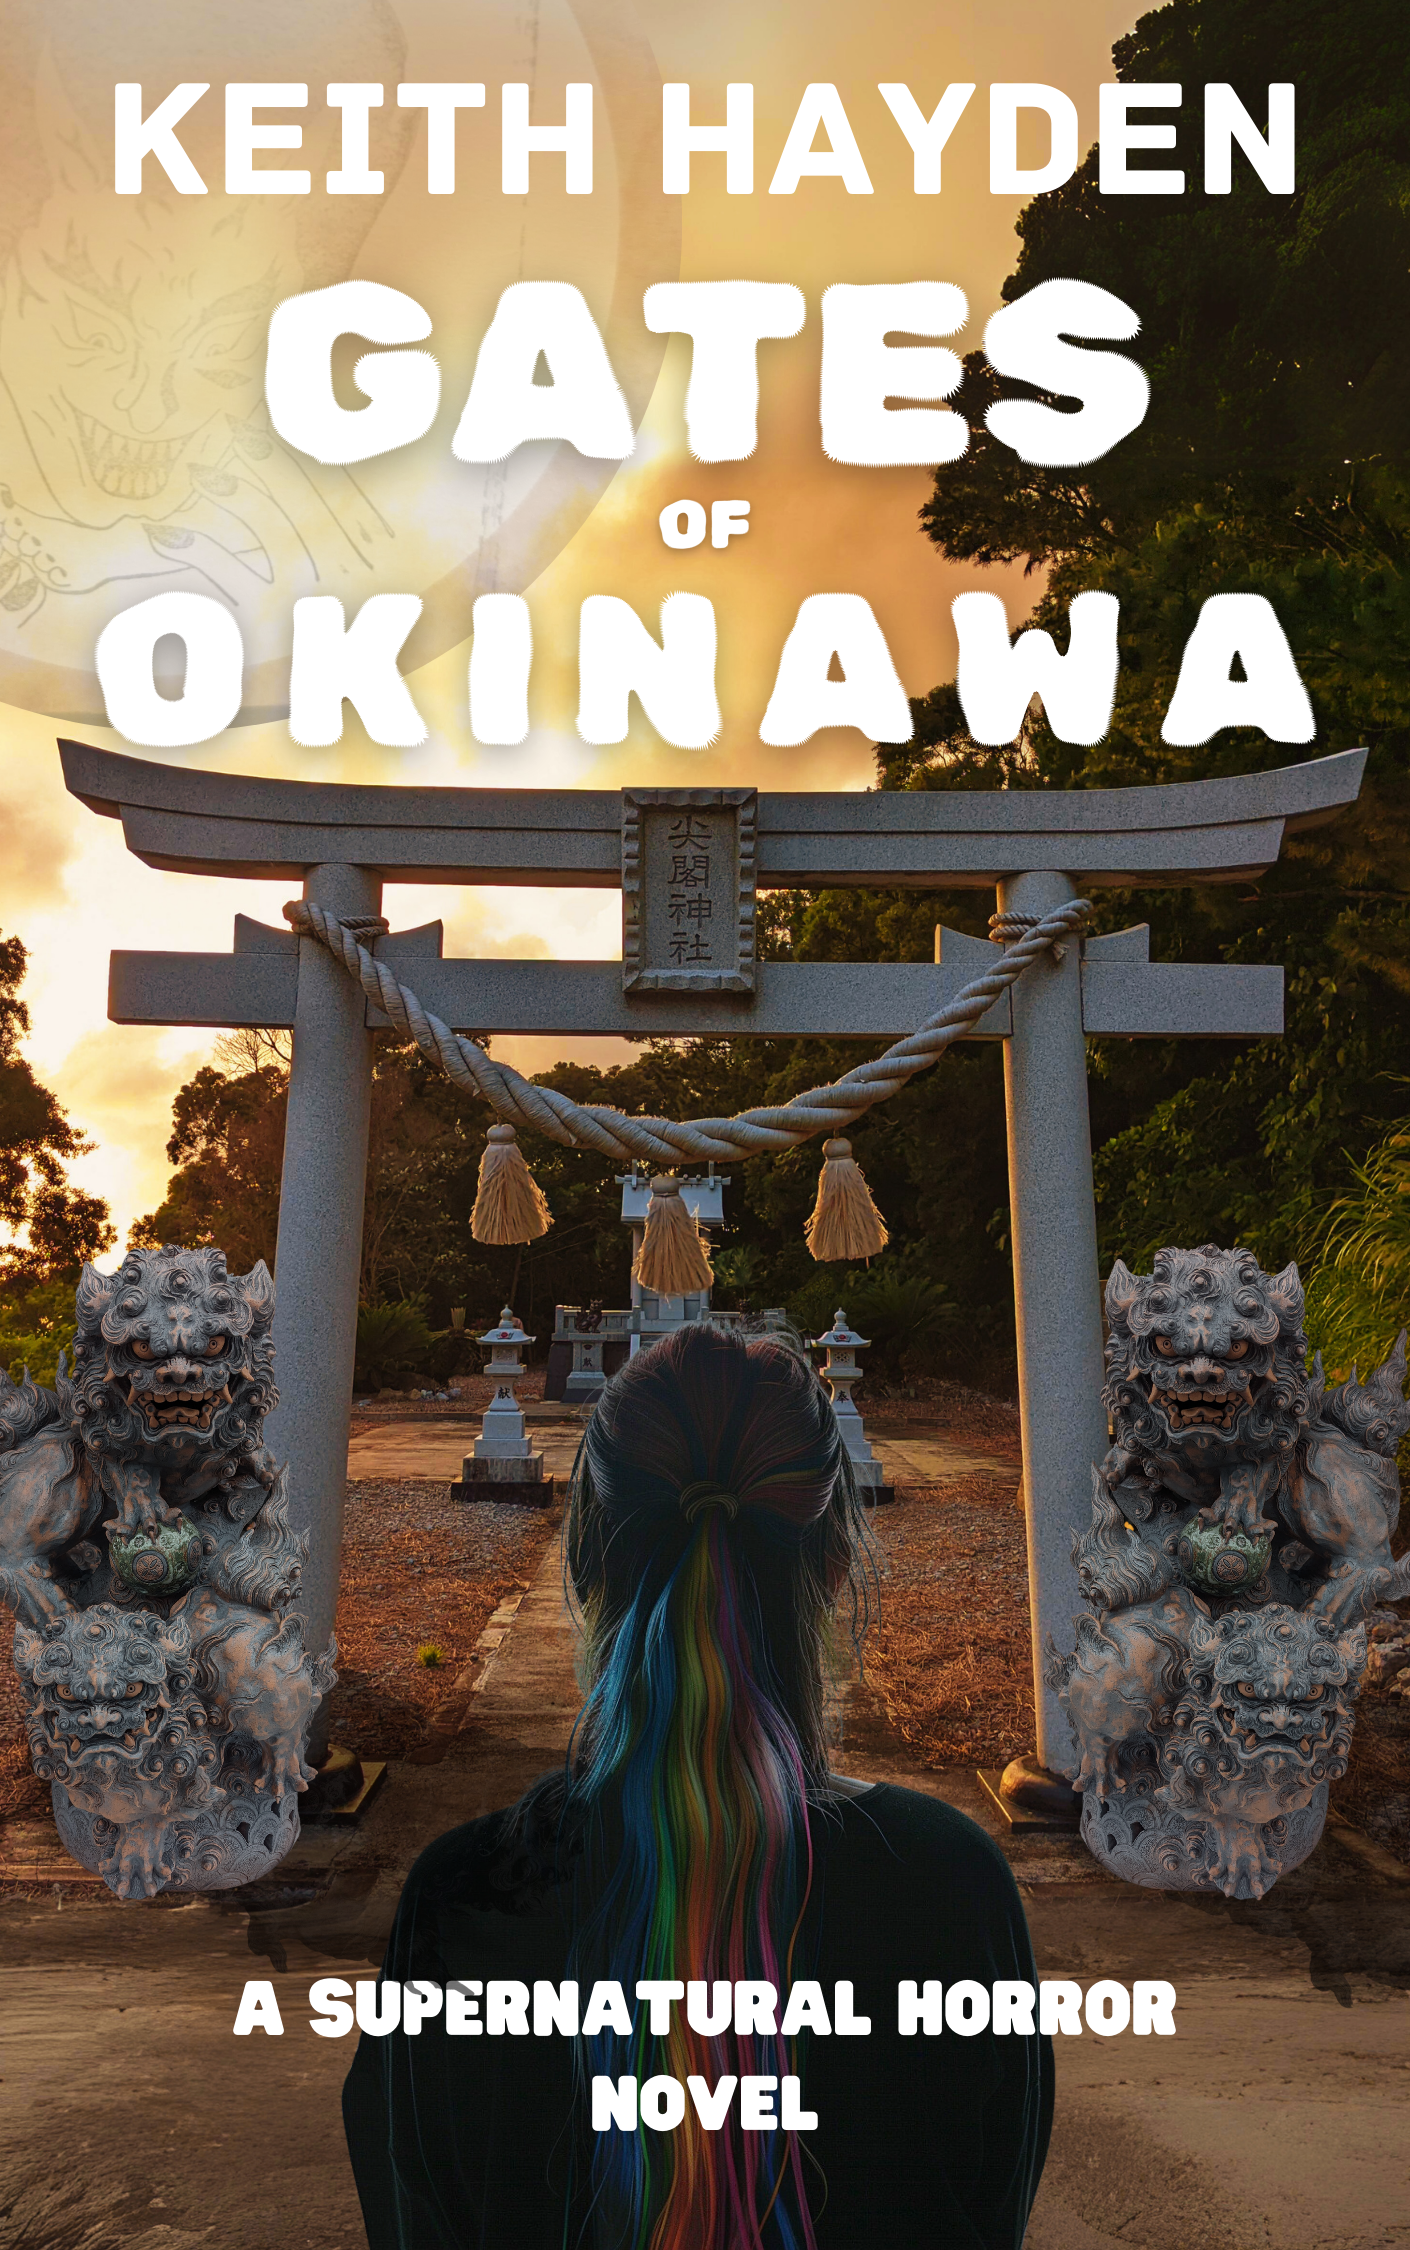 Gates of Okinawa - Novel (Future Bestseller)